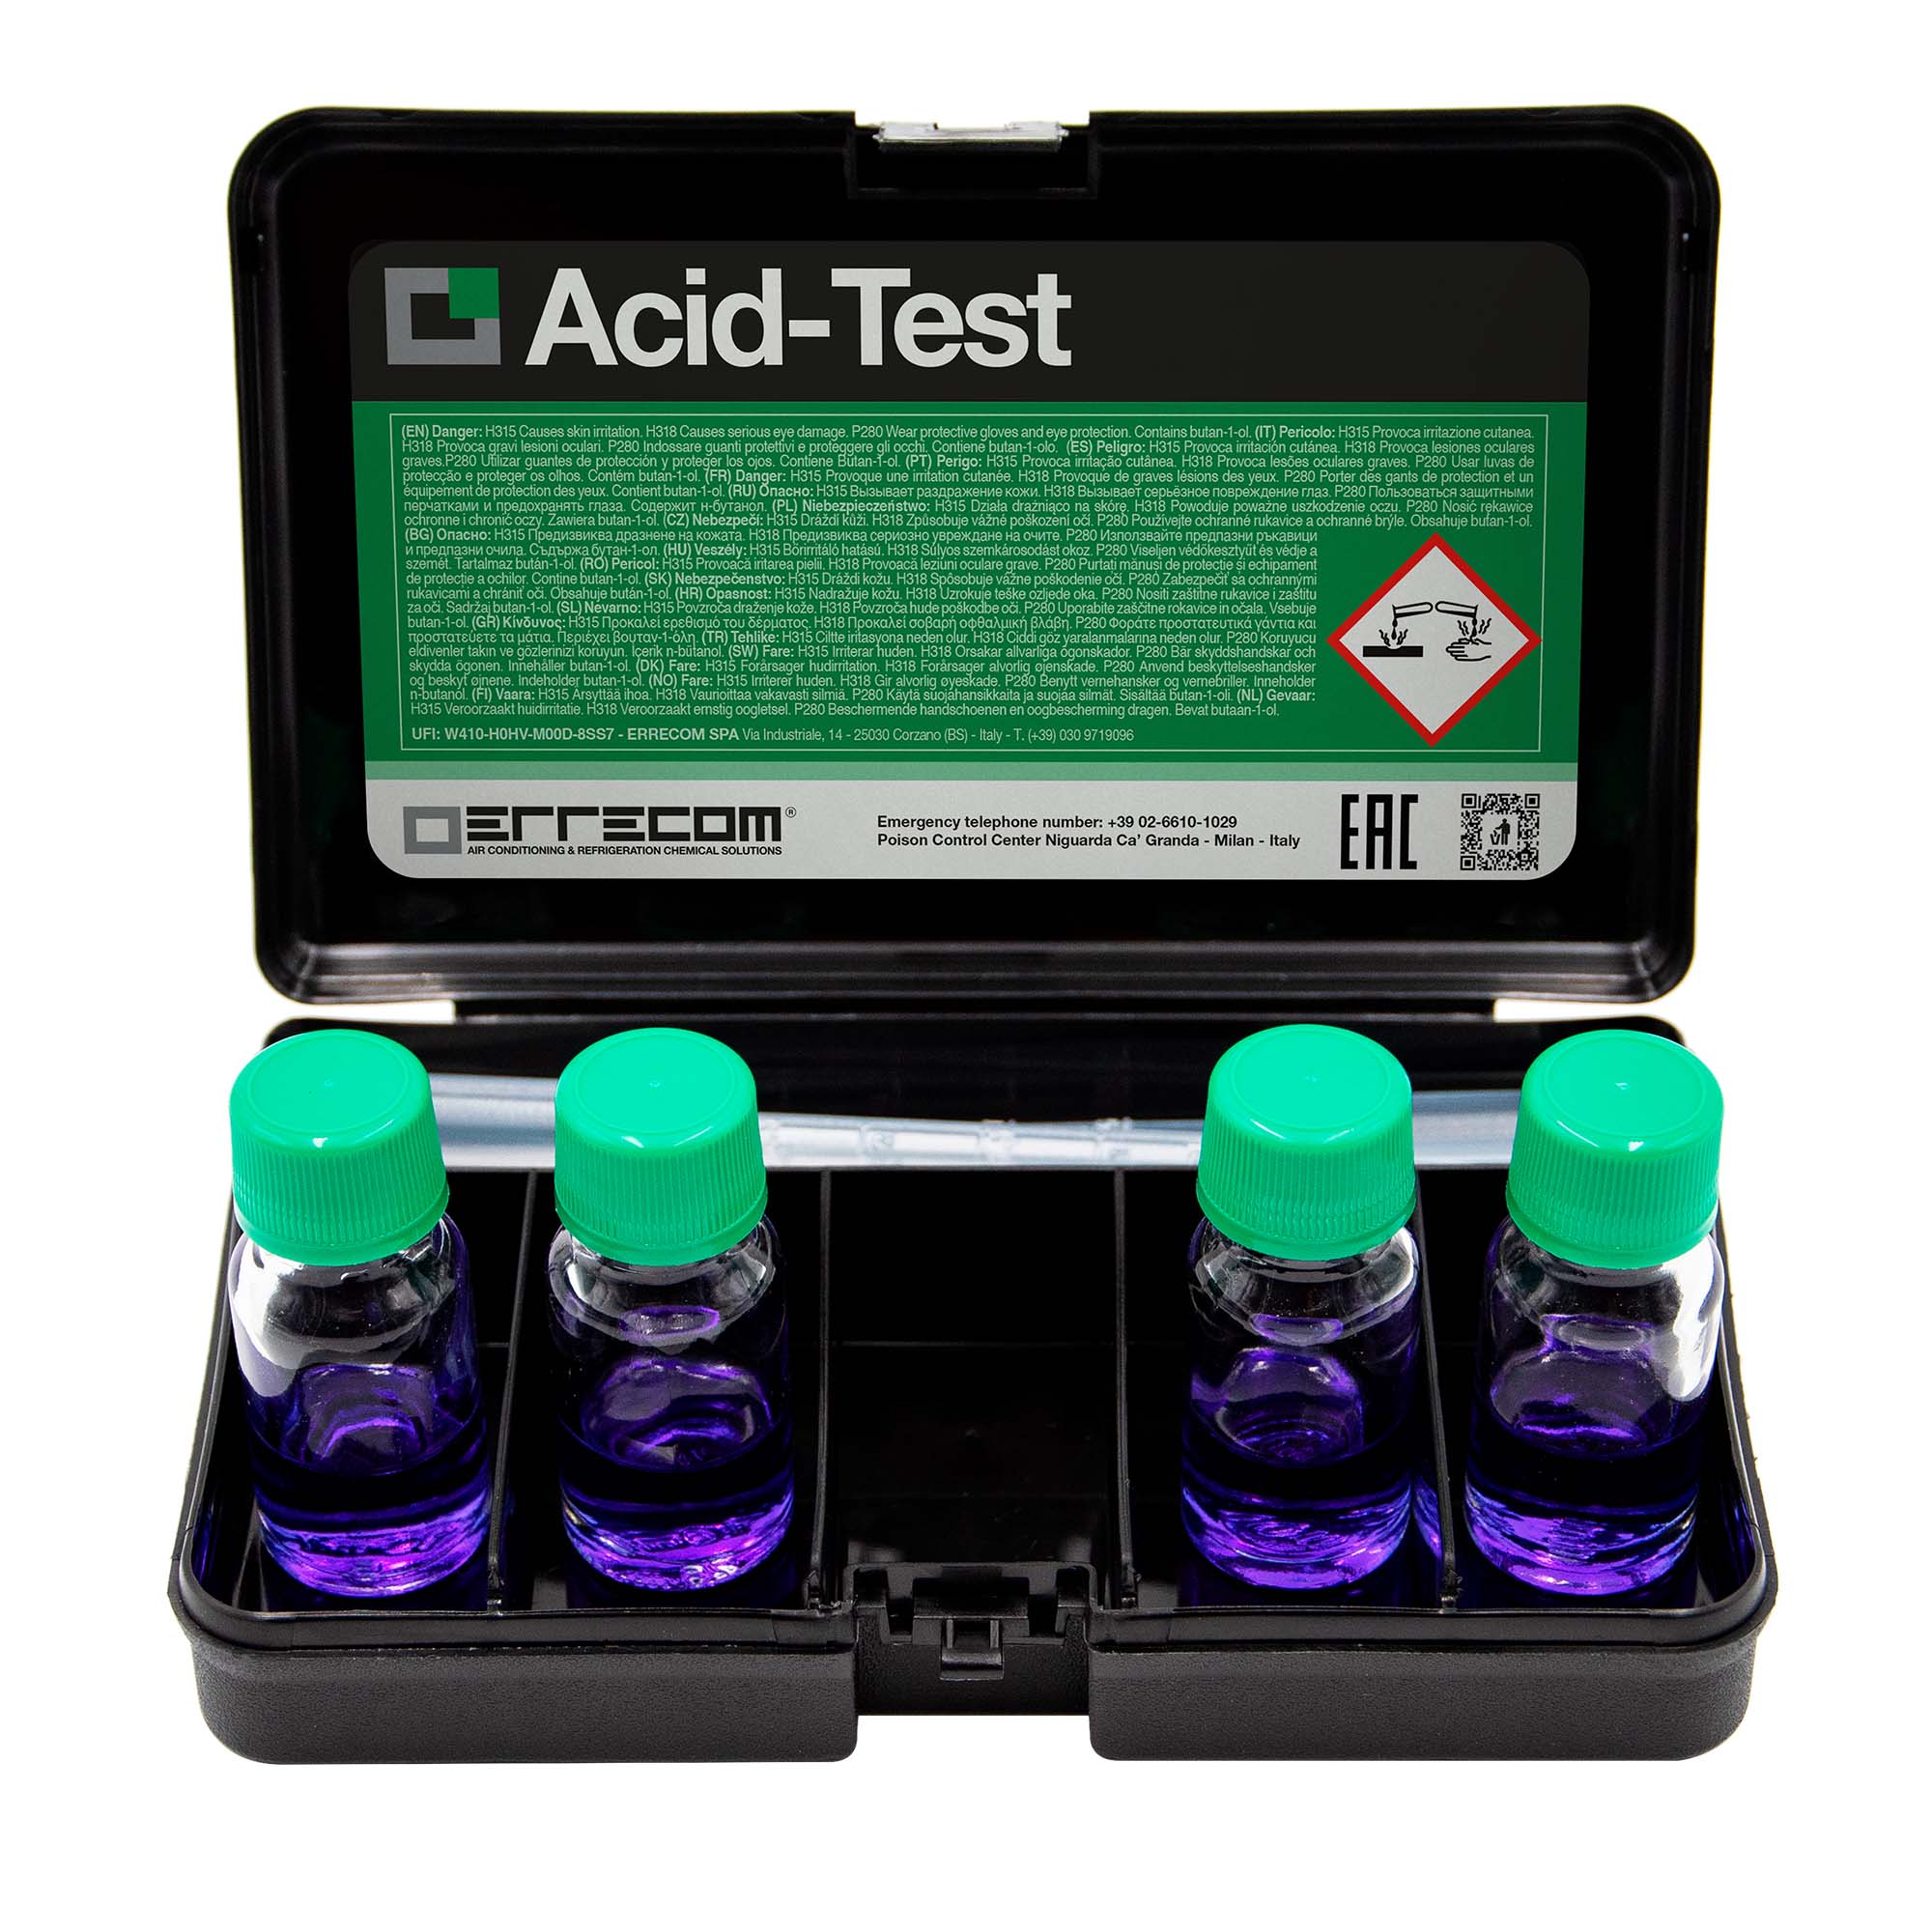 12 x Test per verificare la presenza di Acido nei Lubrificanti - ACID TEST - 4 Test per Kit - Confezione n° 12 pz